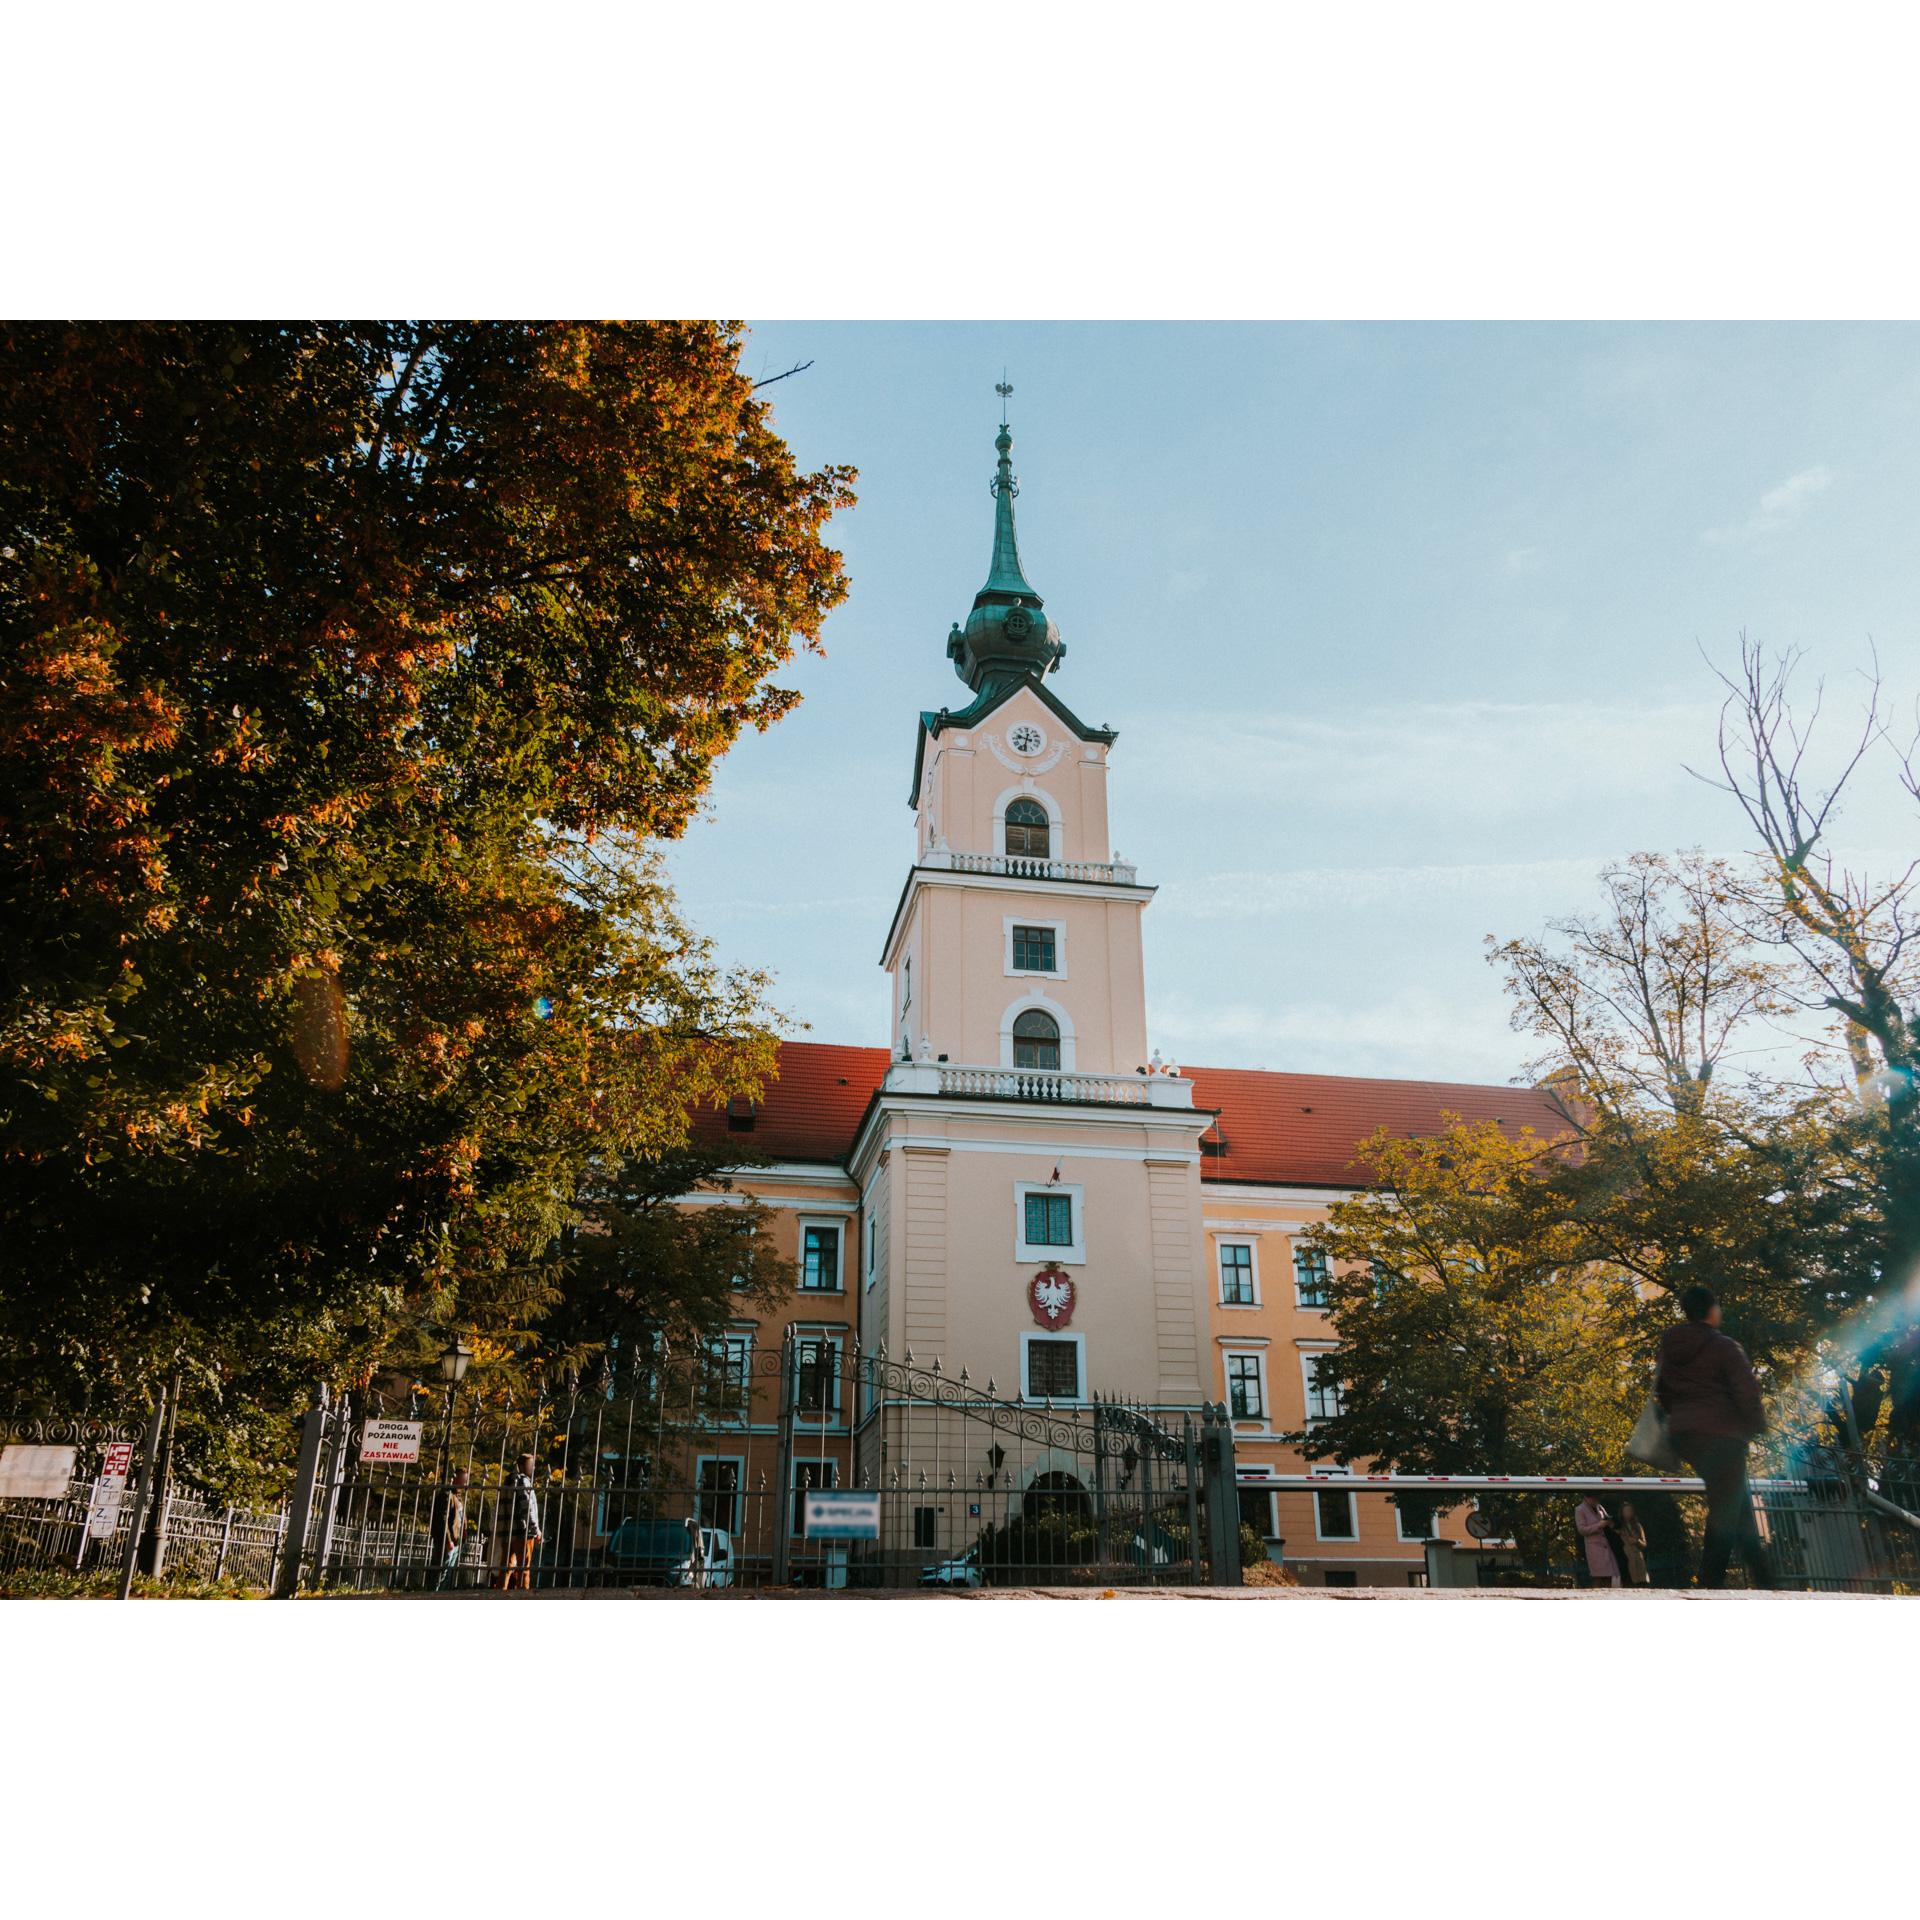 Wieża zamku z zegarem i godłem Polski zakończona zieloną wieżyczką wśród drzew